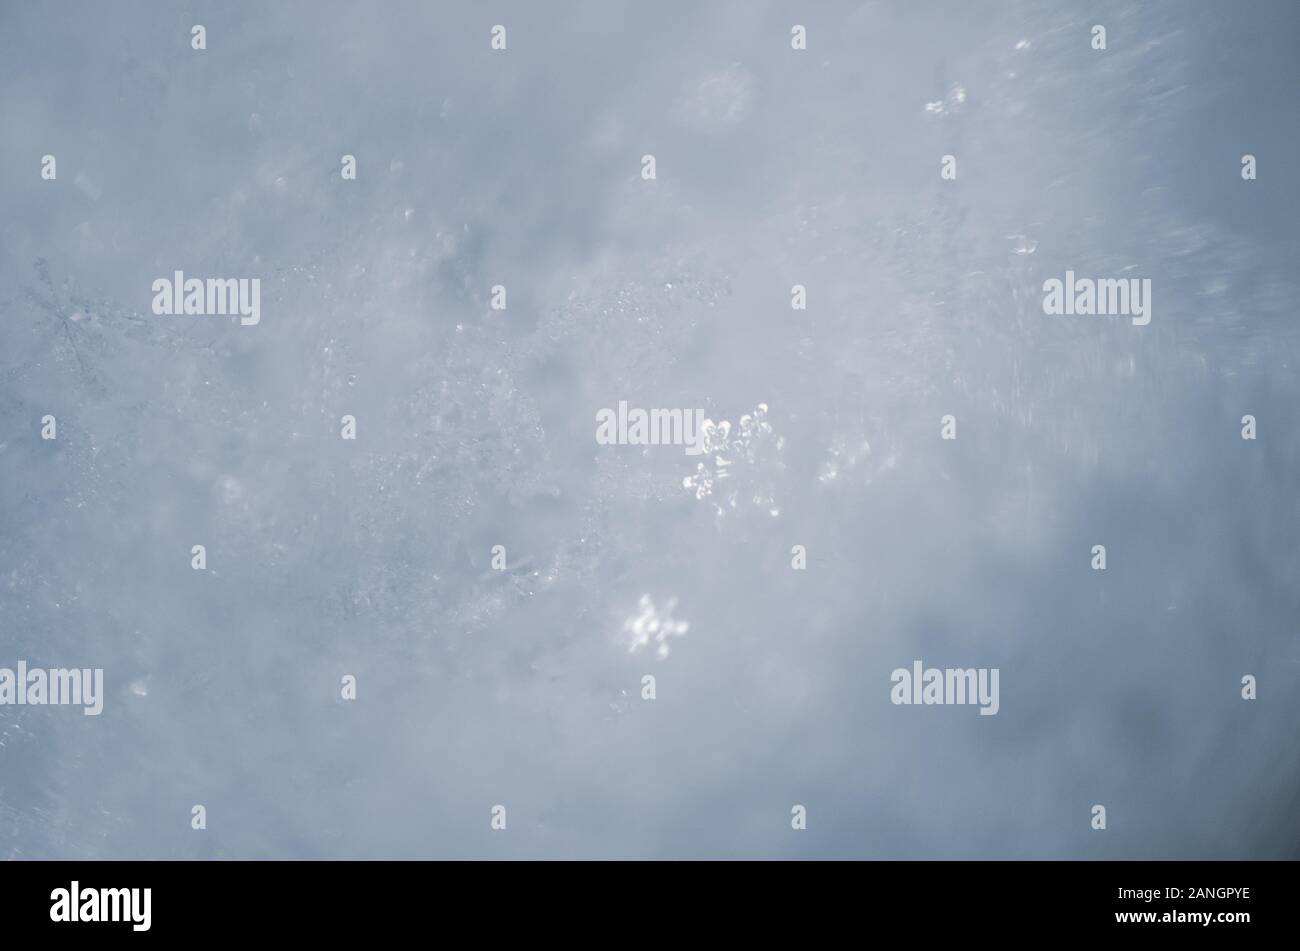 Fiocchi di neve naturale sulla neve, photo real fiocchi di neve durante una nevicata, in condizioni naturali a bassa temperatura Foto Stock